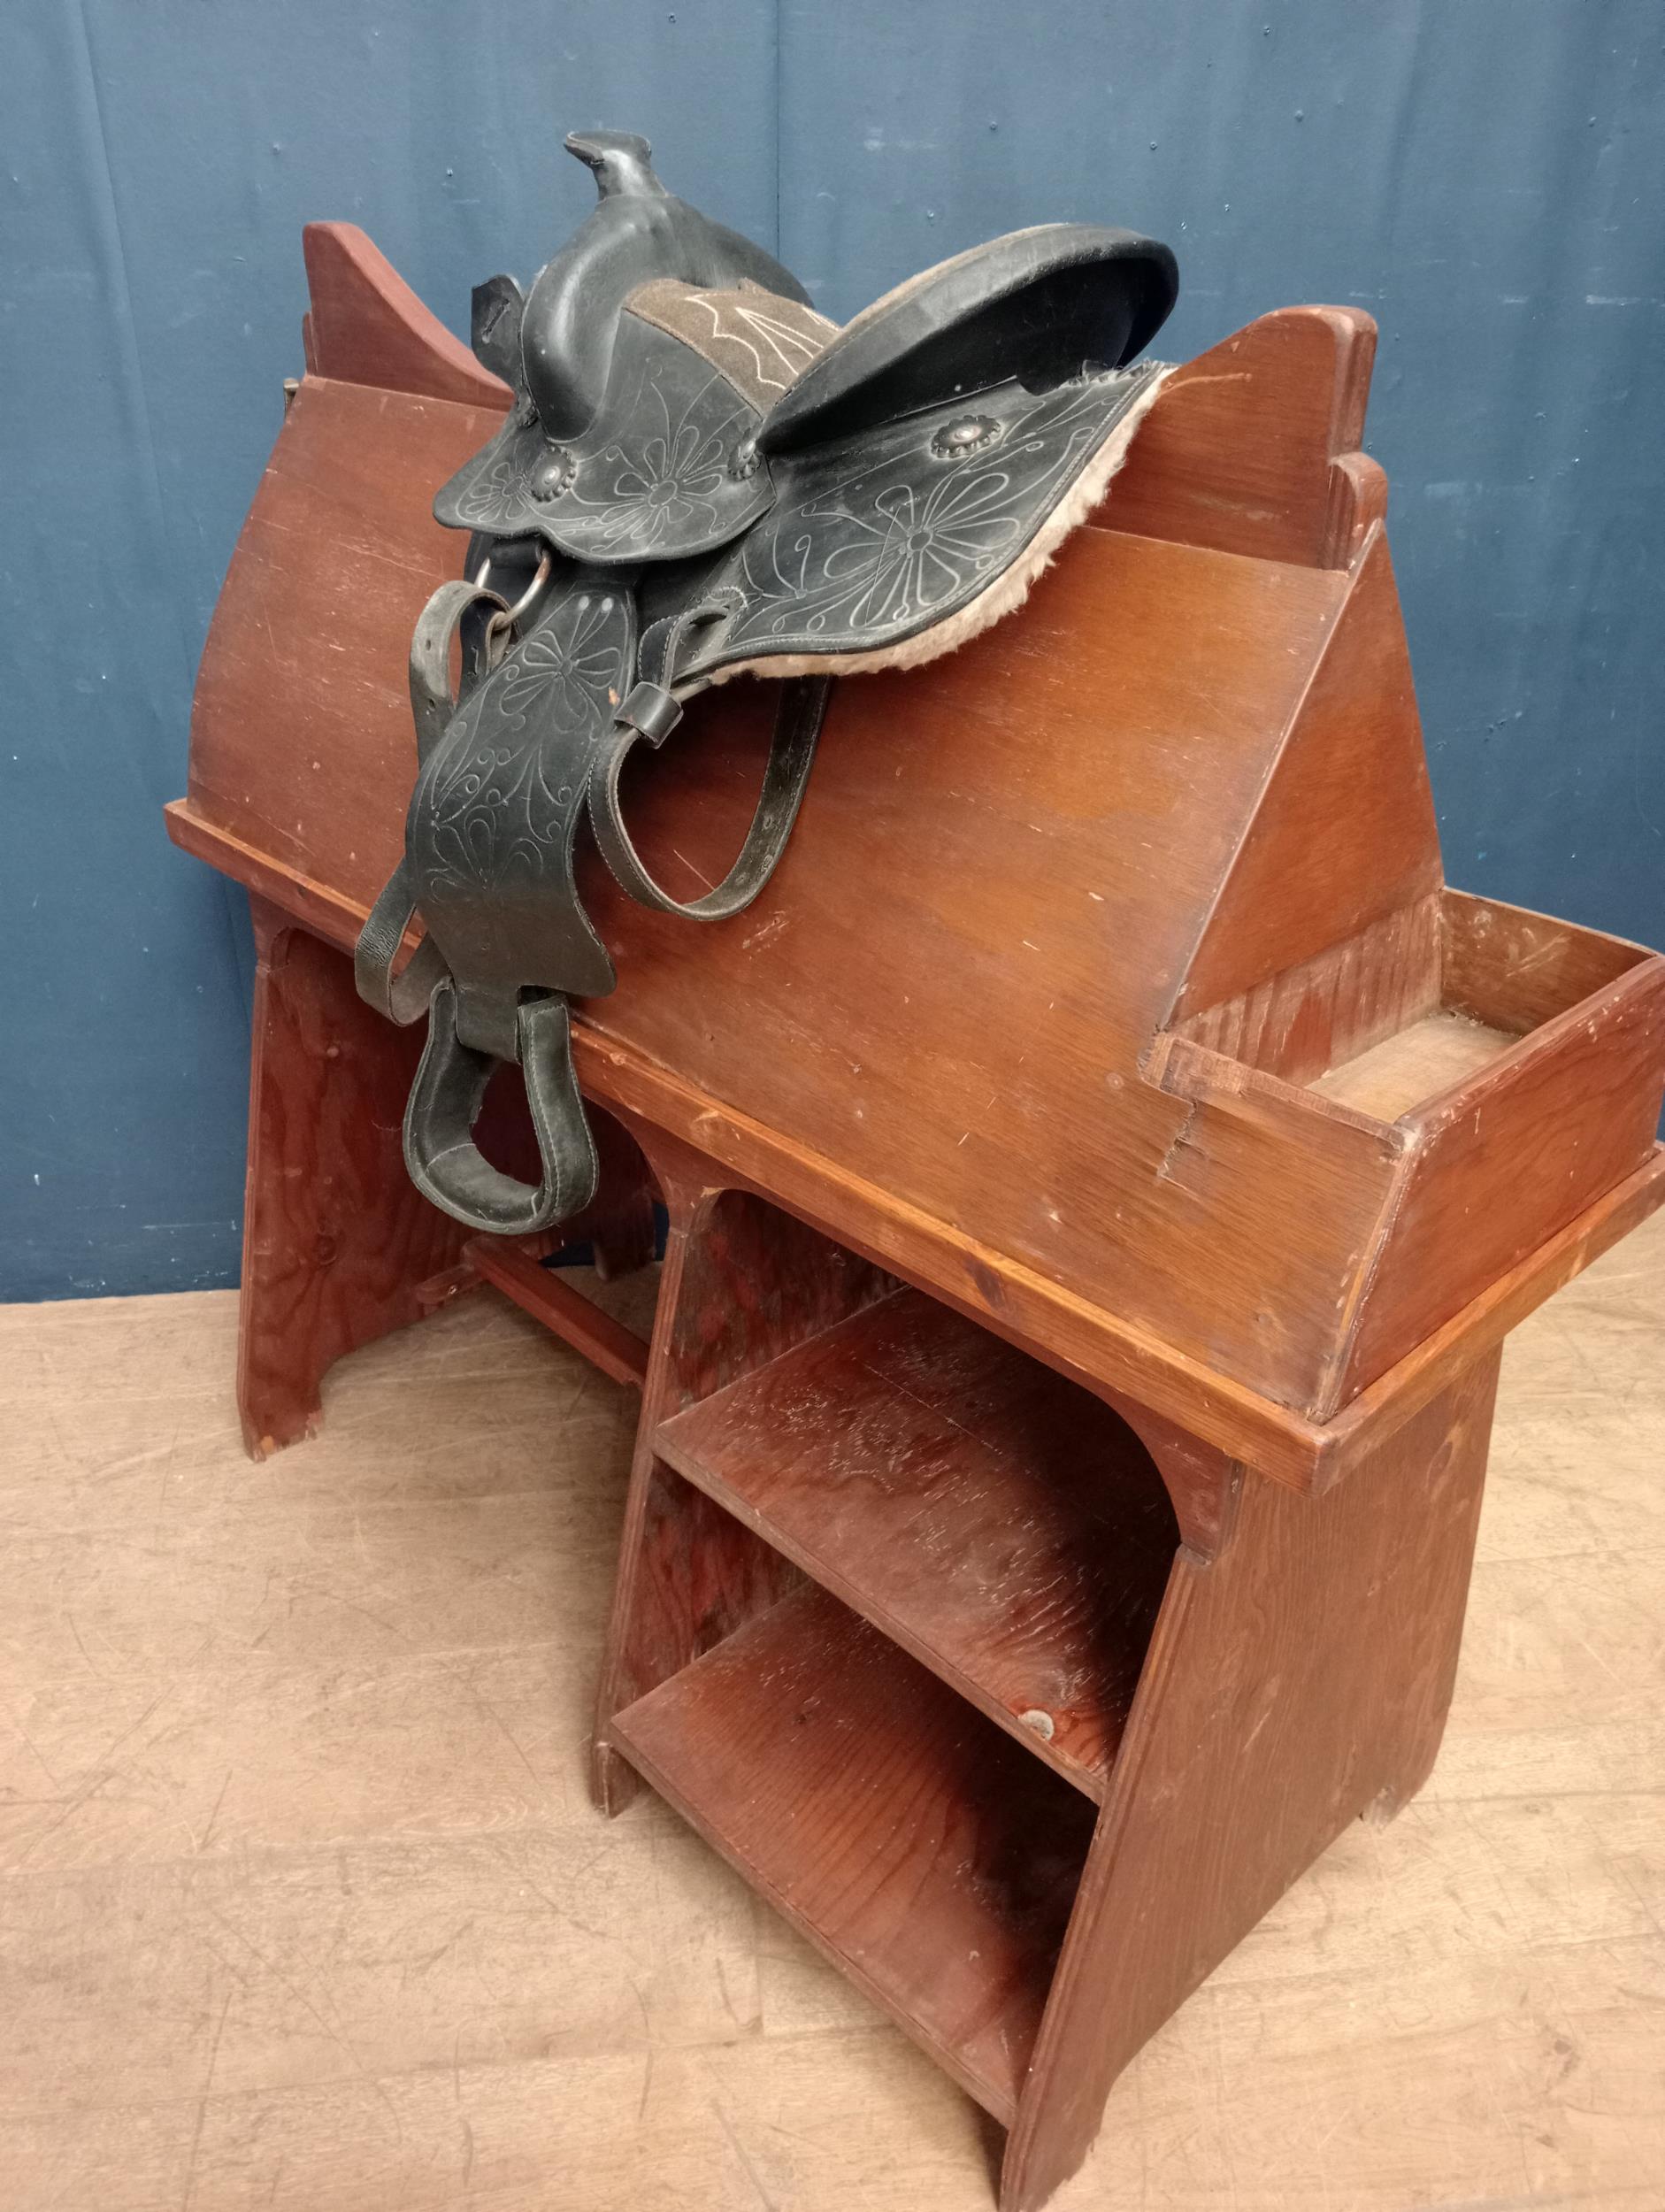 Cowboys leather saddle {H 60cm x W 50cm x D 40cm }. - Image 5 of 5